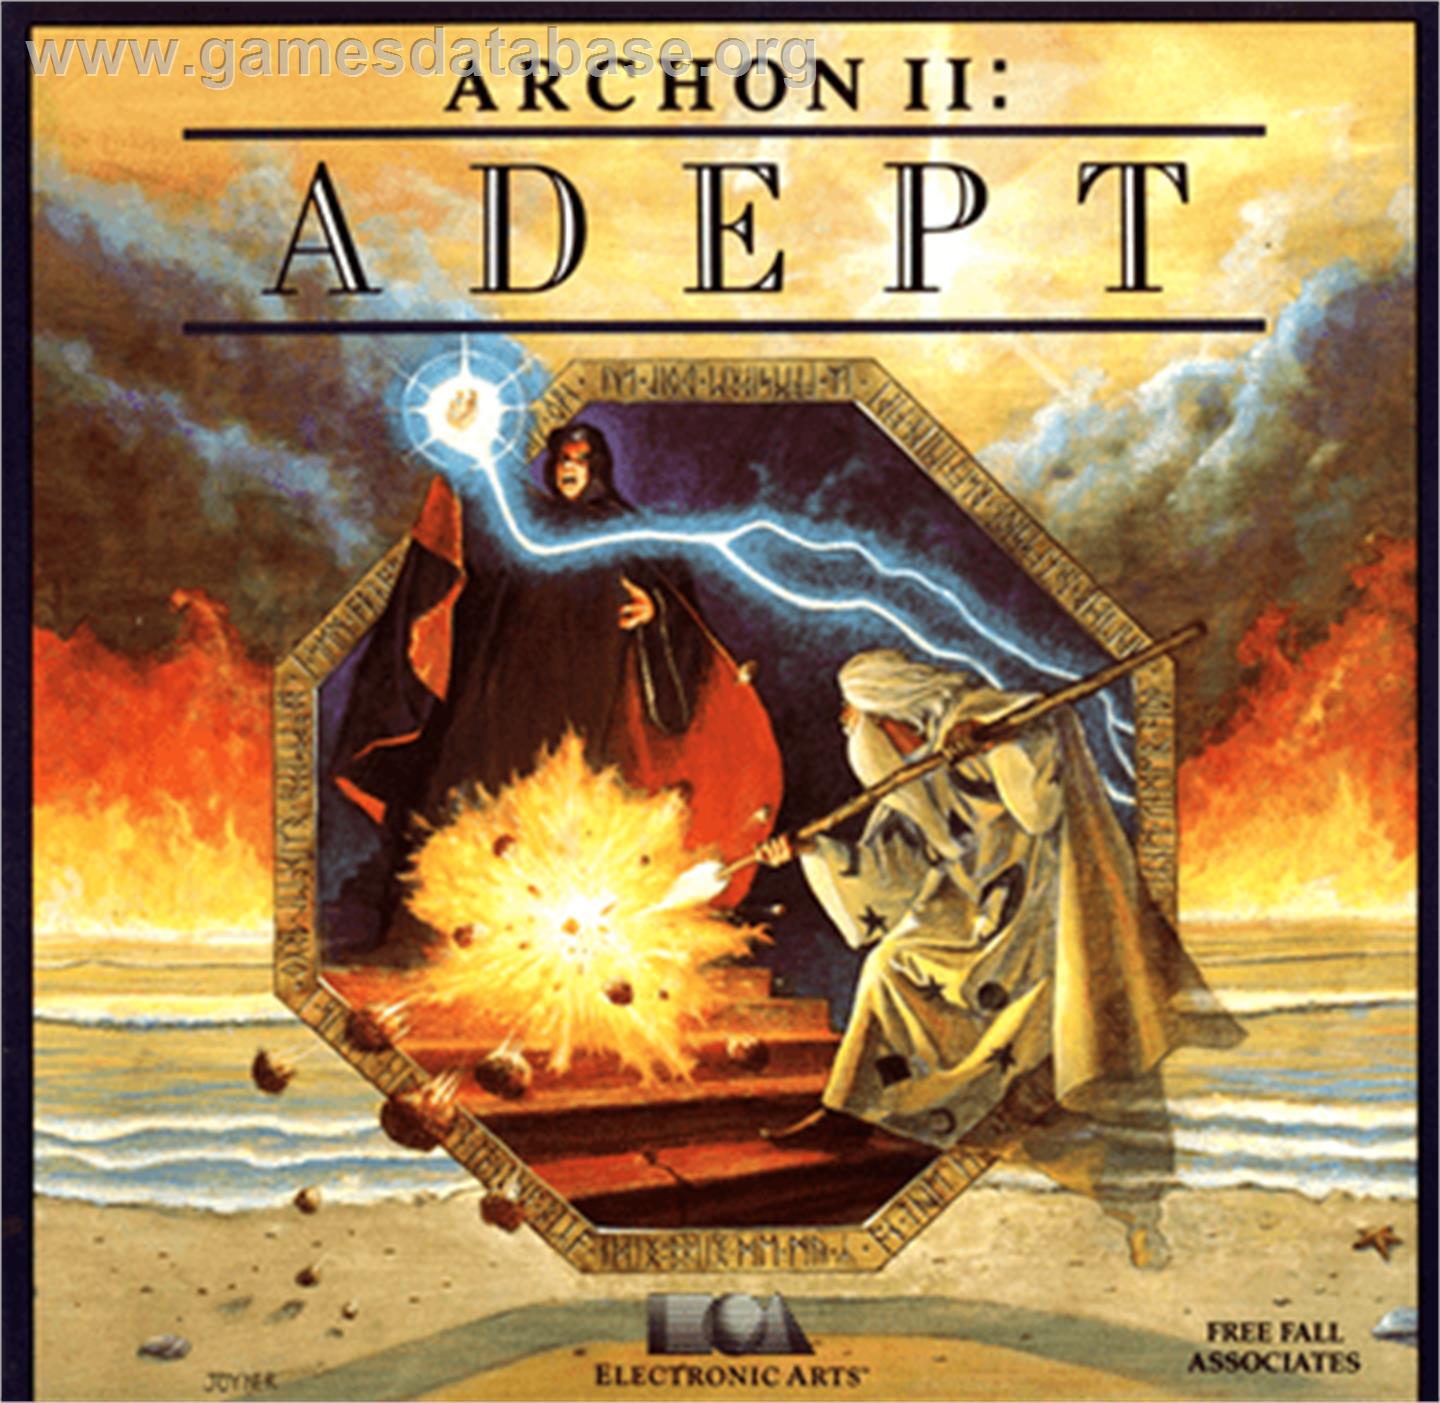 Archon II: Adept - Commodore 64 - Artwork - Box